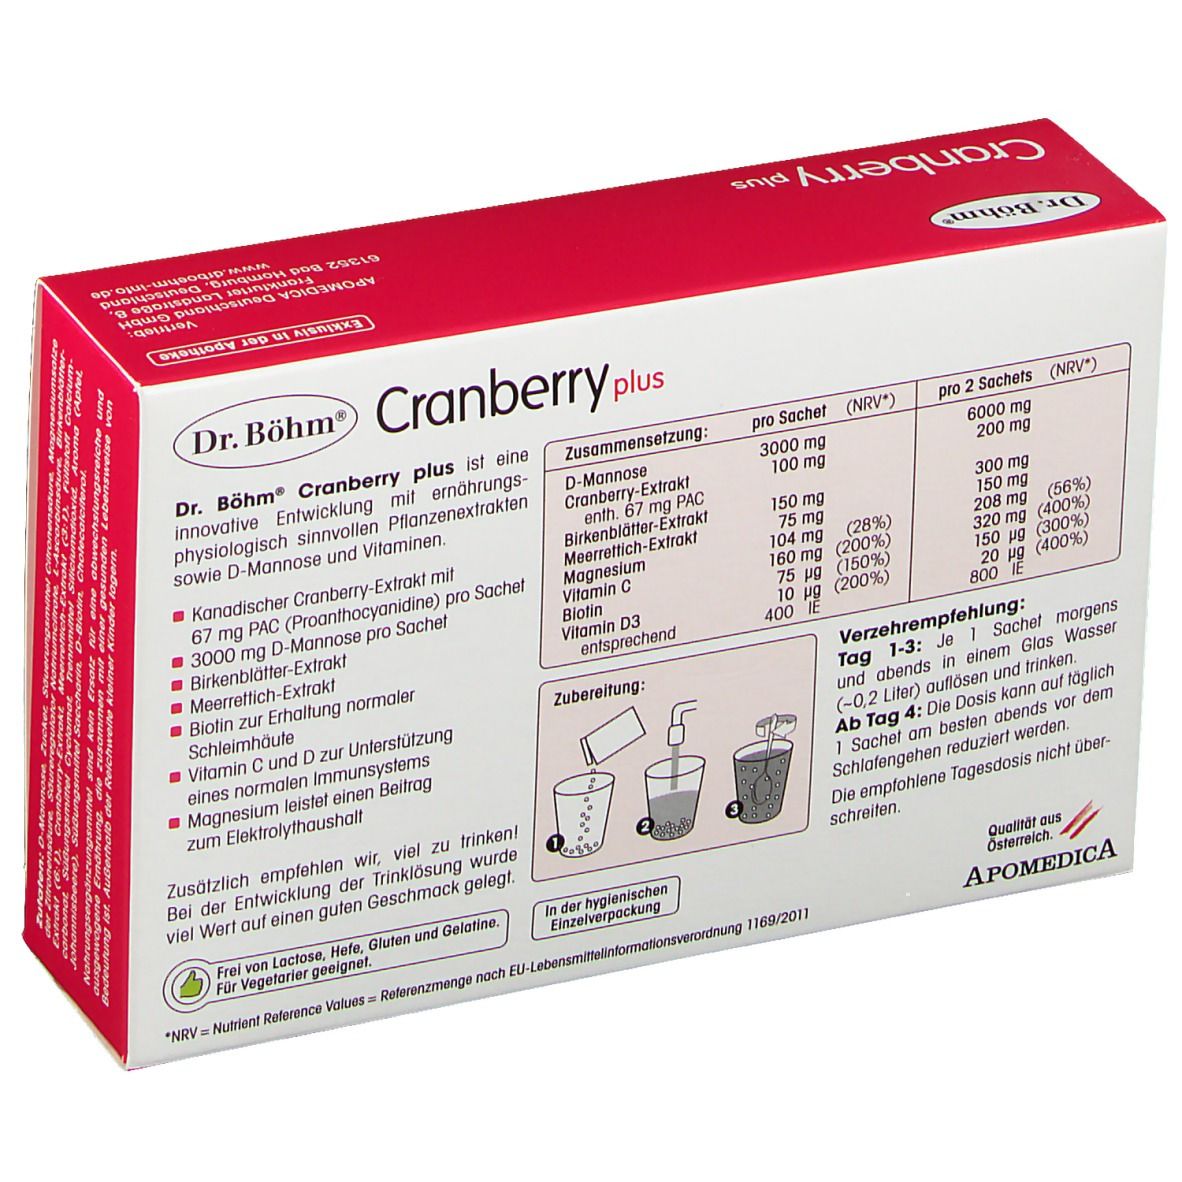  Dr. Böhm® Cranberry plus